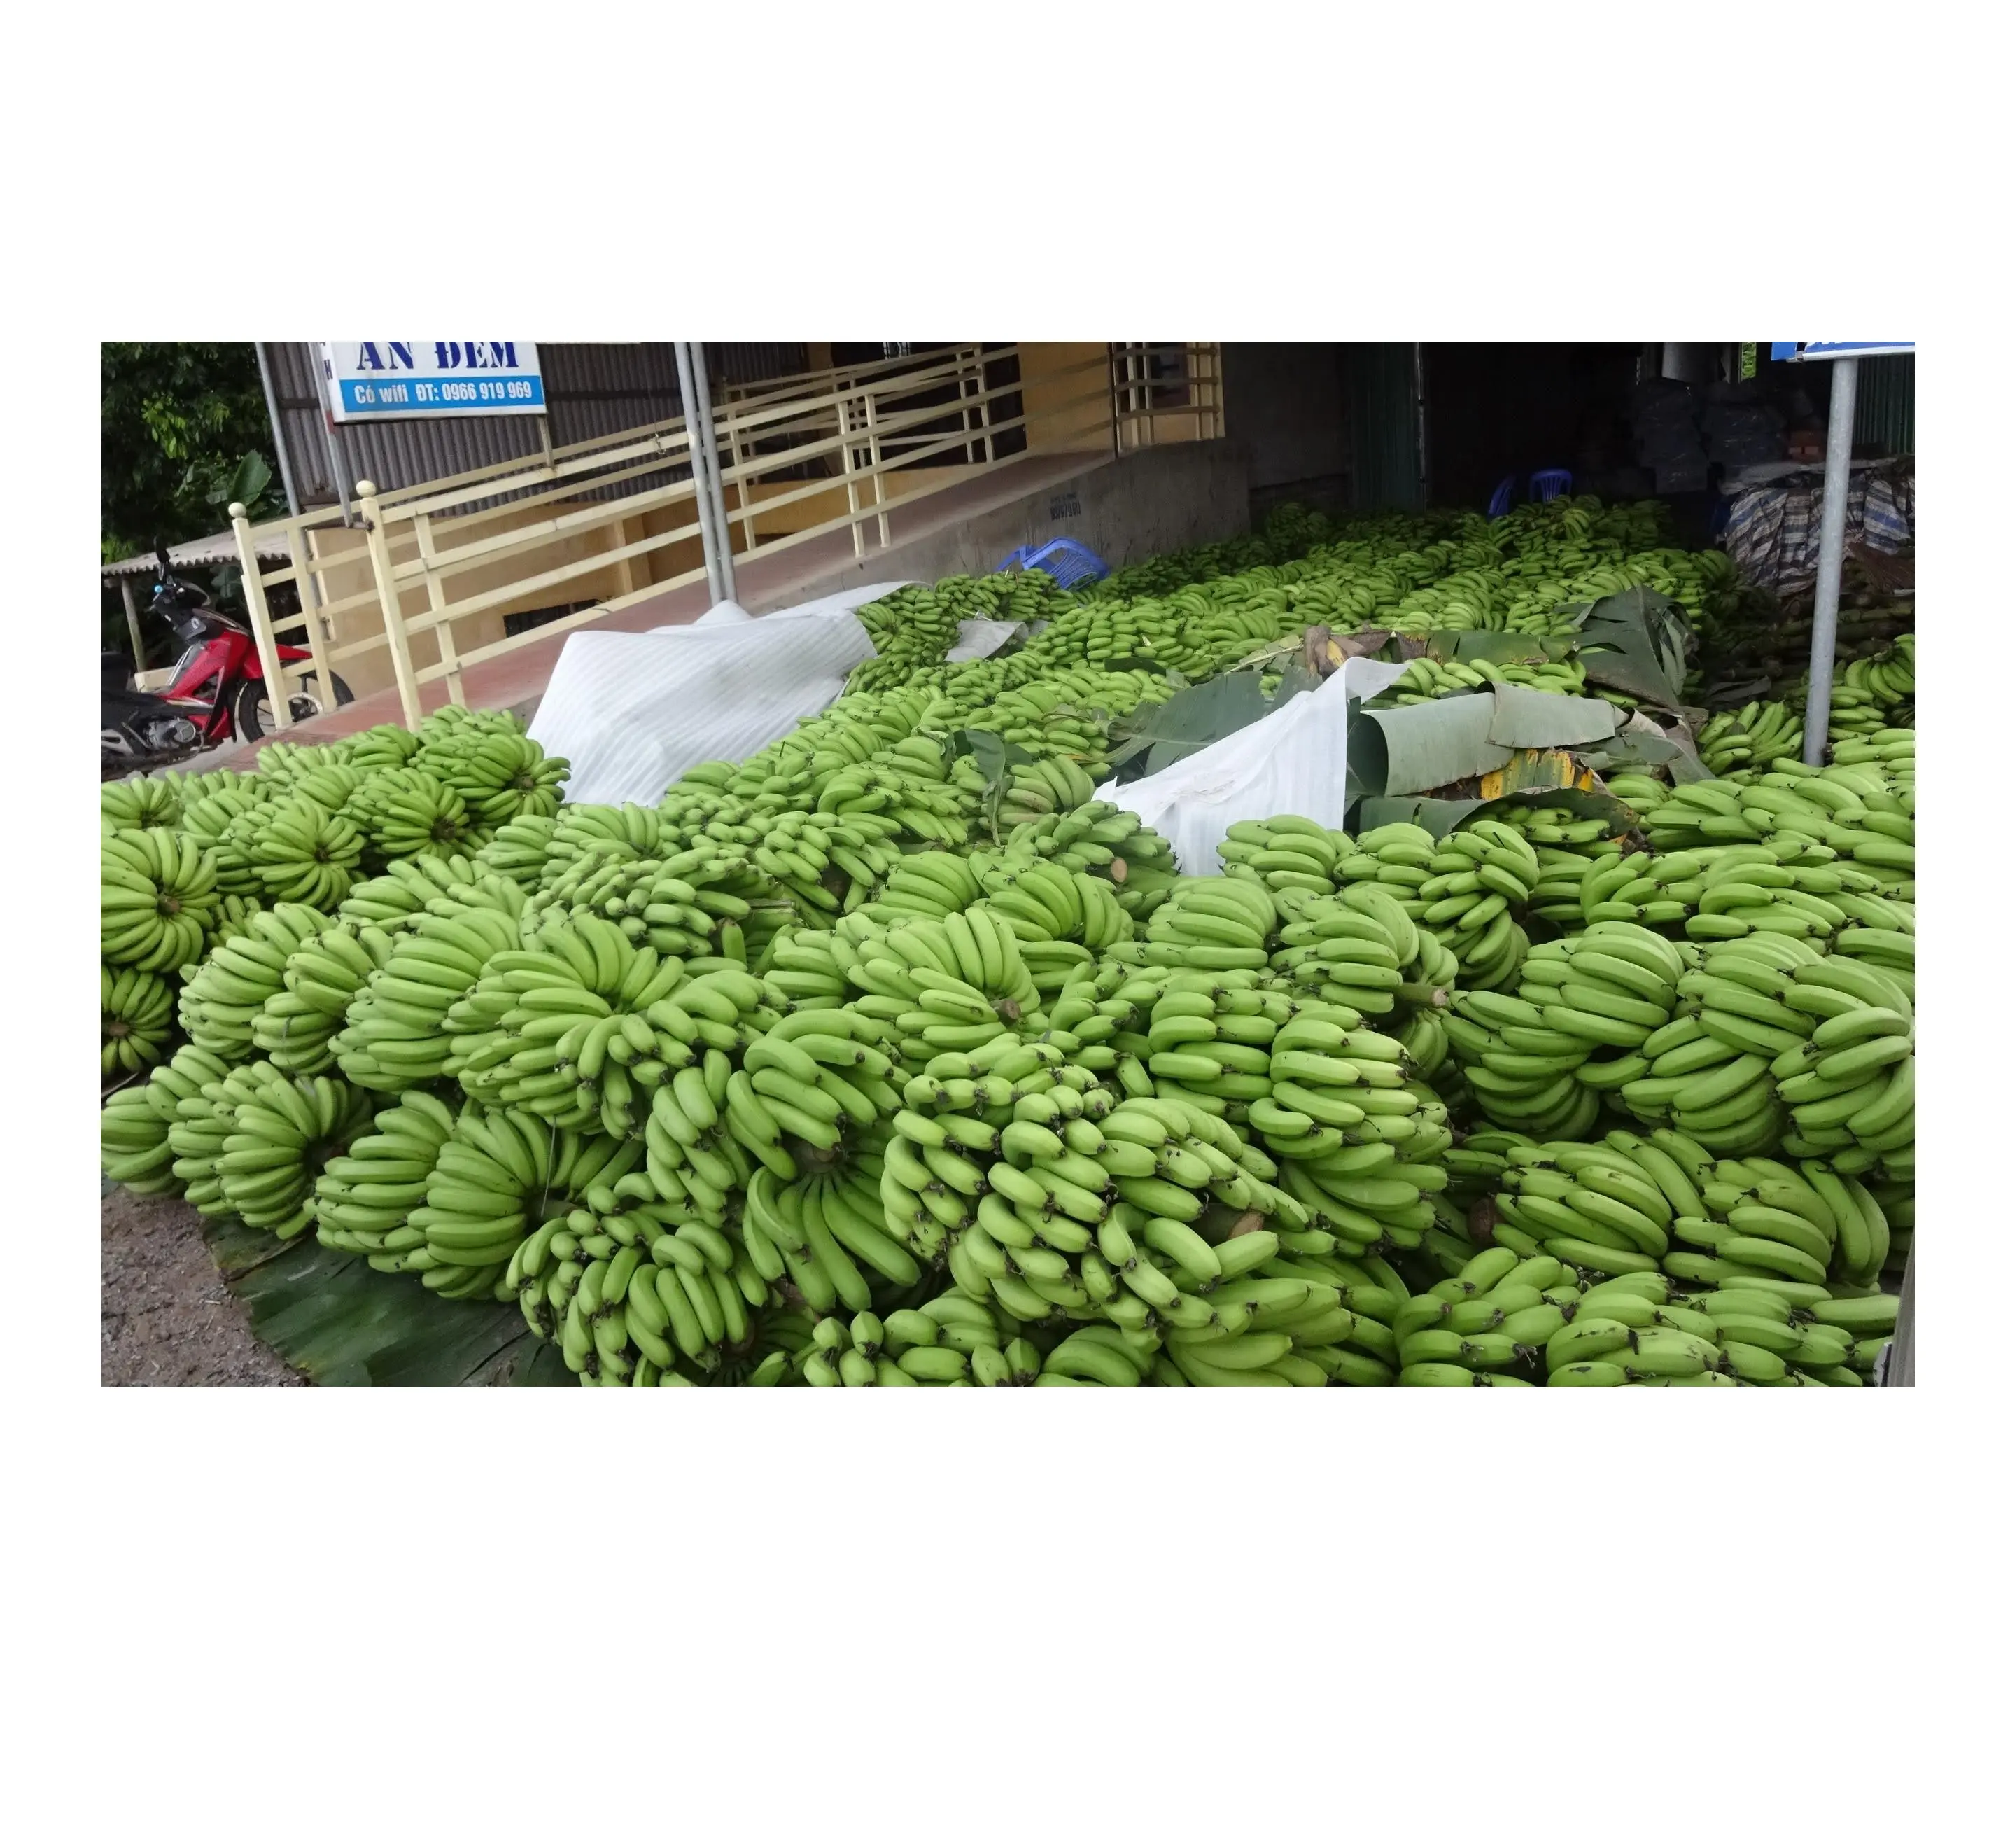 Top Kwaliteit Verse Bananen/Groene Bananen/Cavendish Bananen Lage Prijzen. Angelina + 84327746158